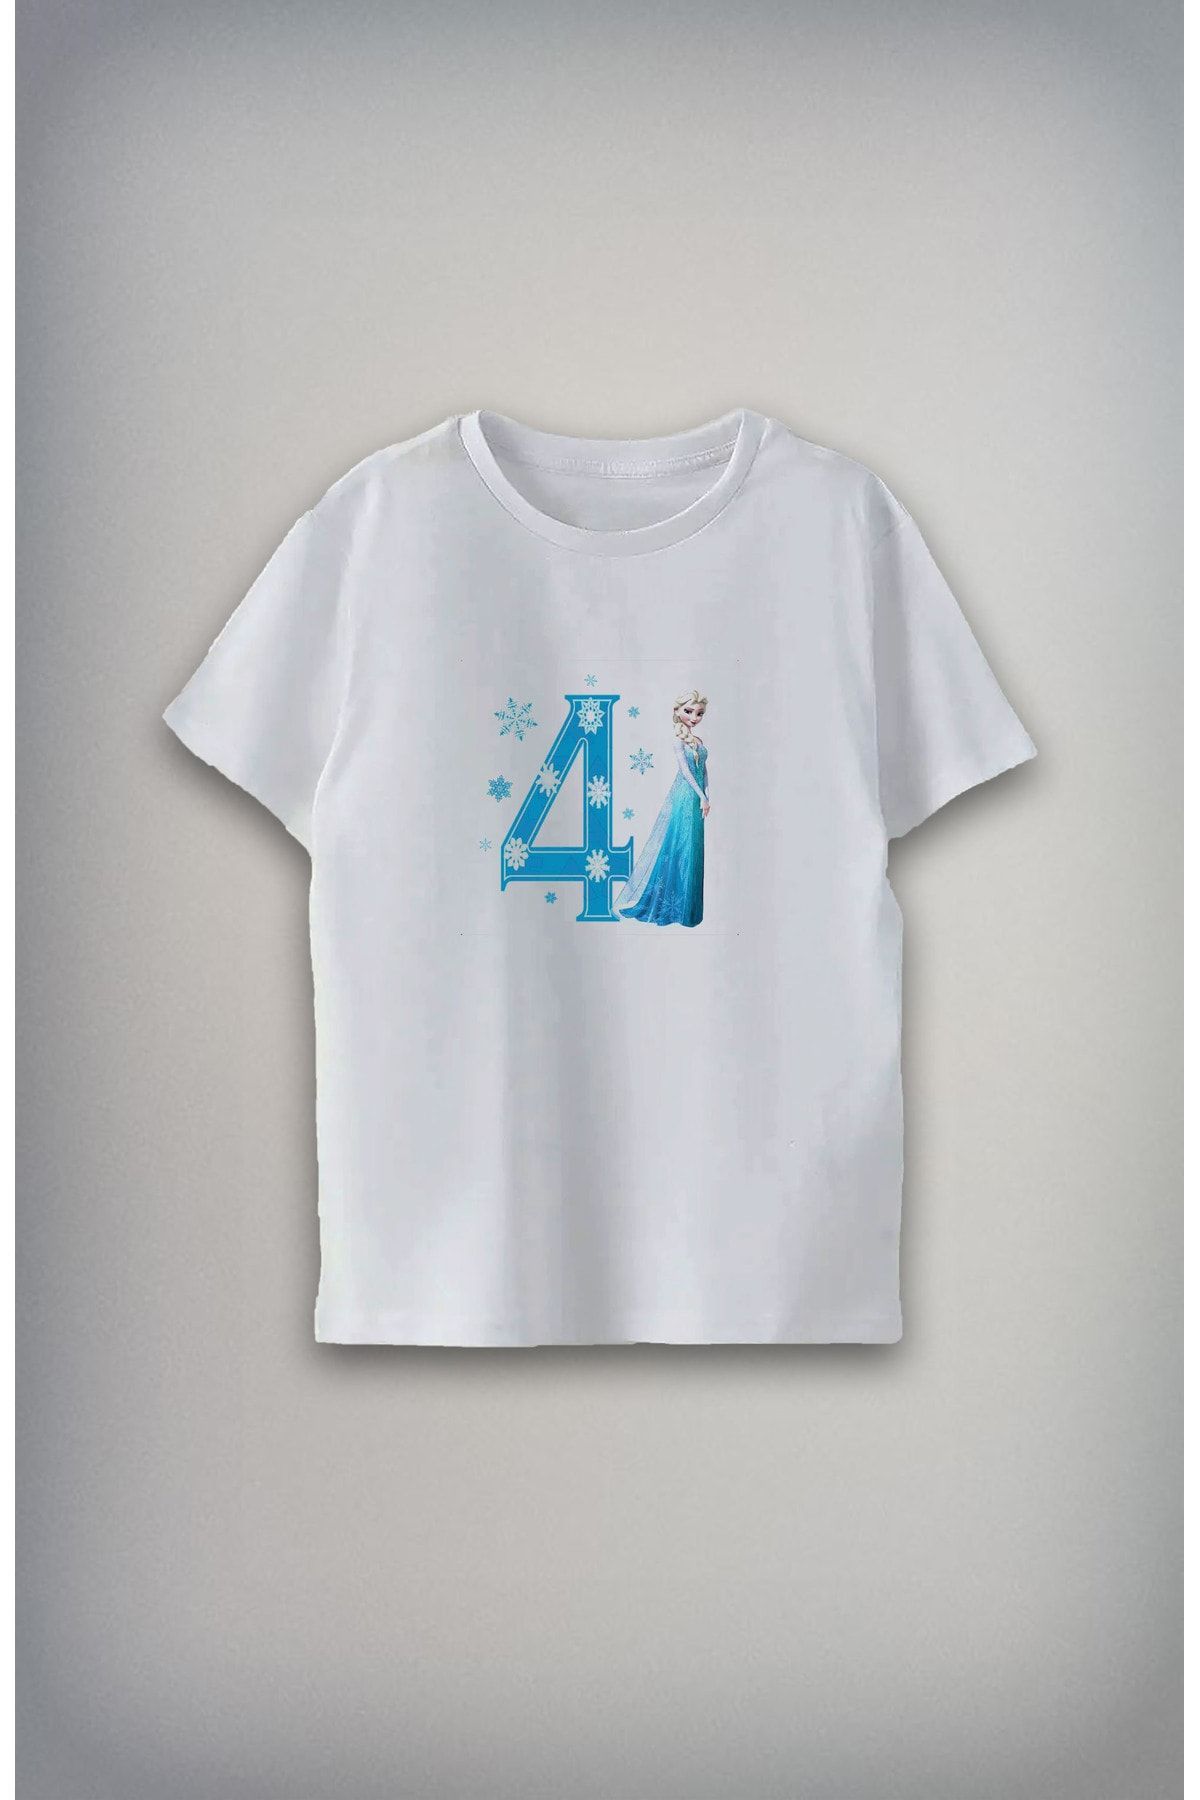 Darkia 5 Yaş Özel Tasarım Baskılı Unisex Çocuk T-shirt Tişört